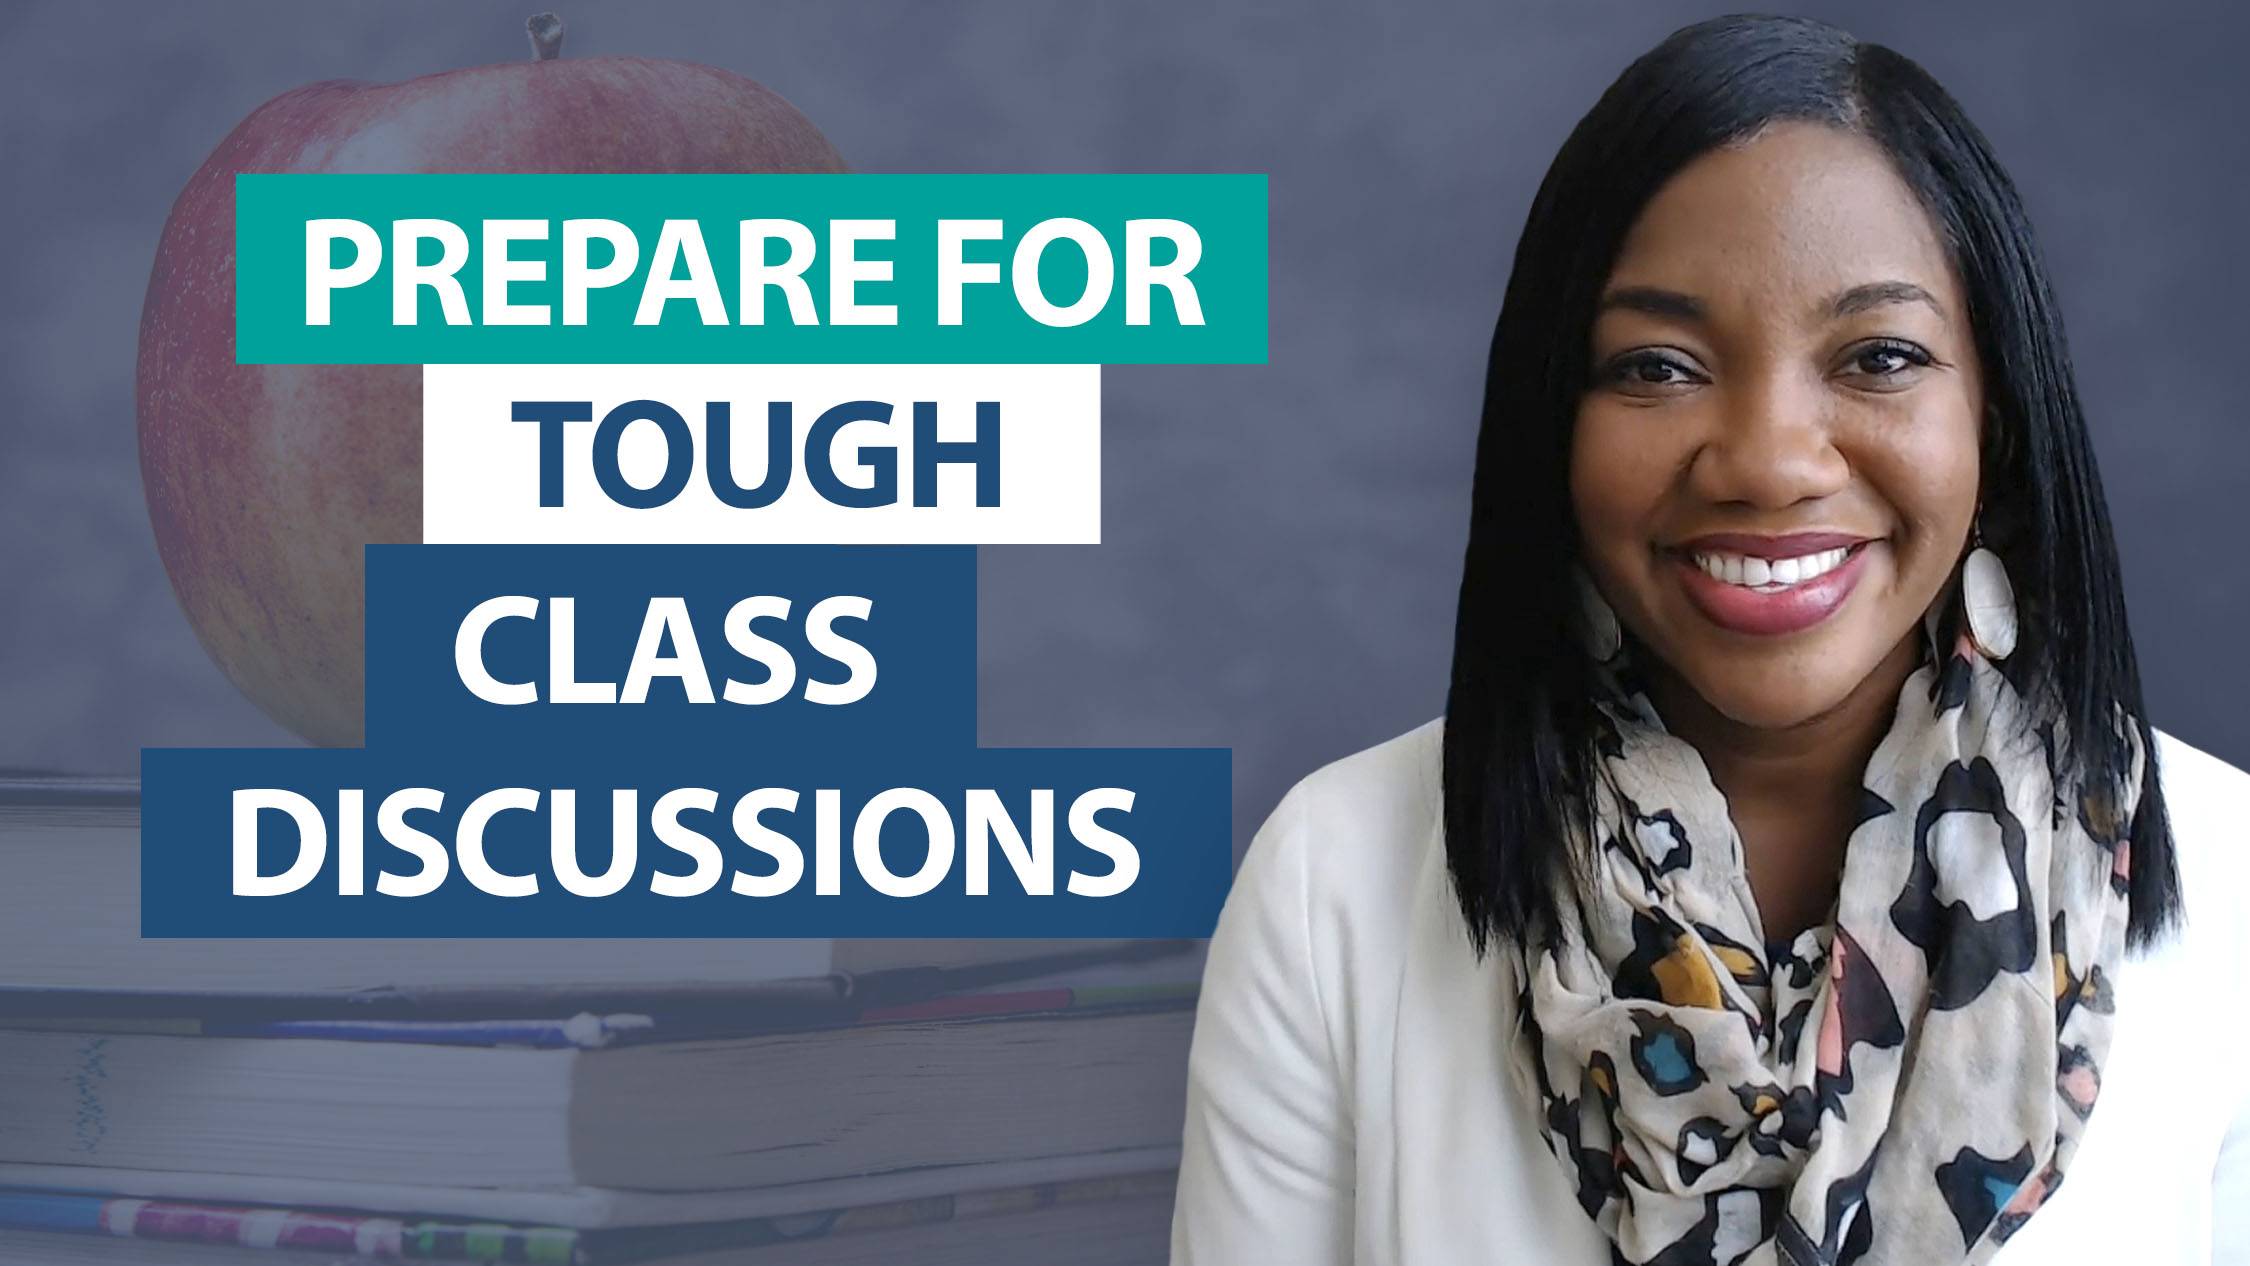 Ask Smekens: How do I prepare for tough class discussions?